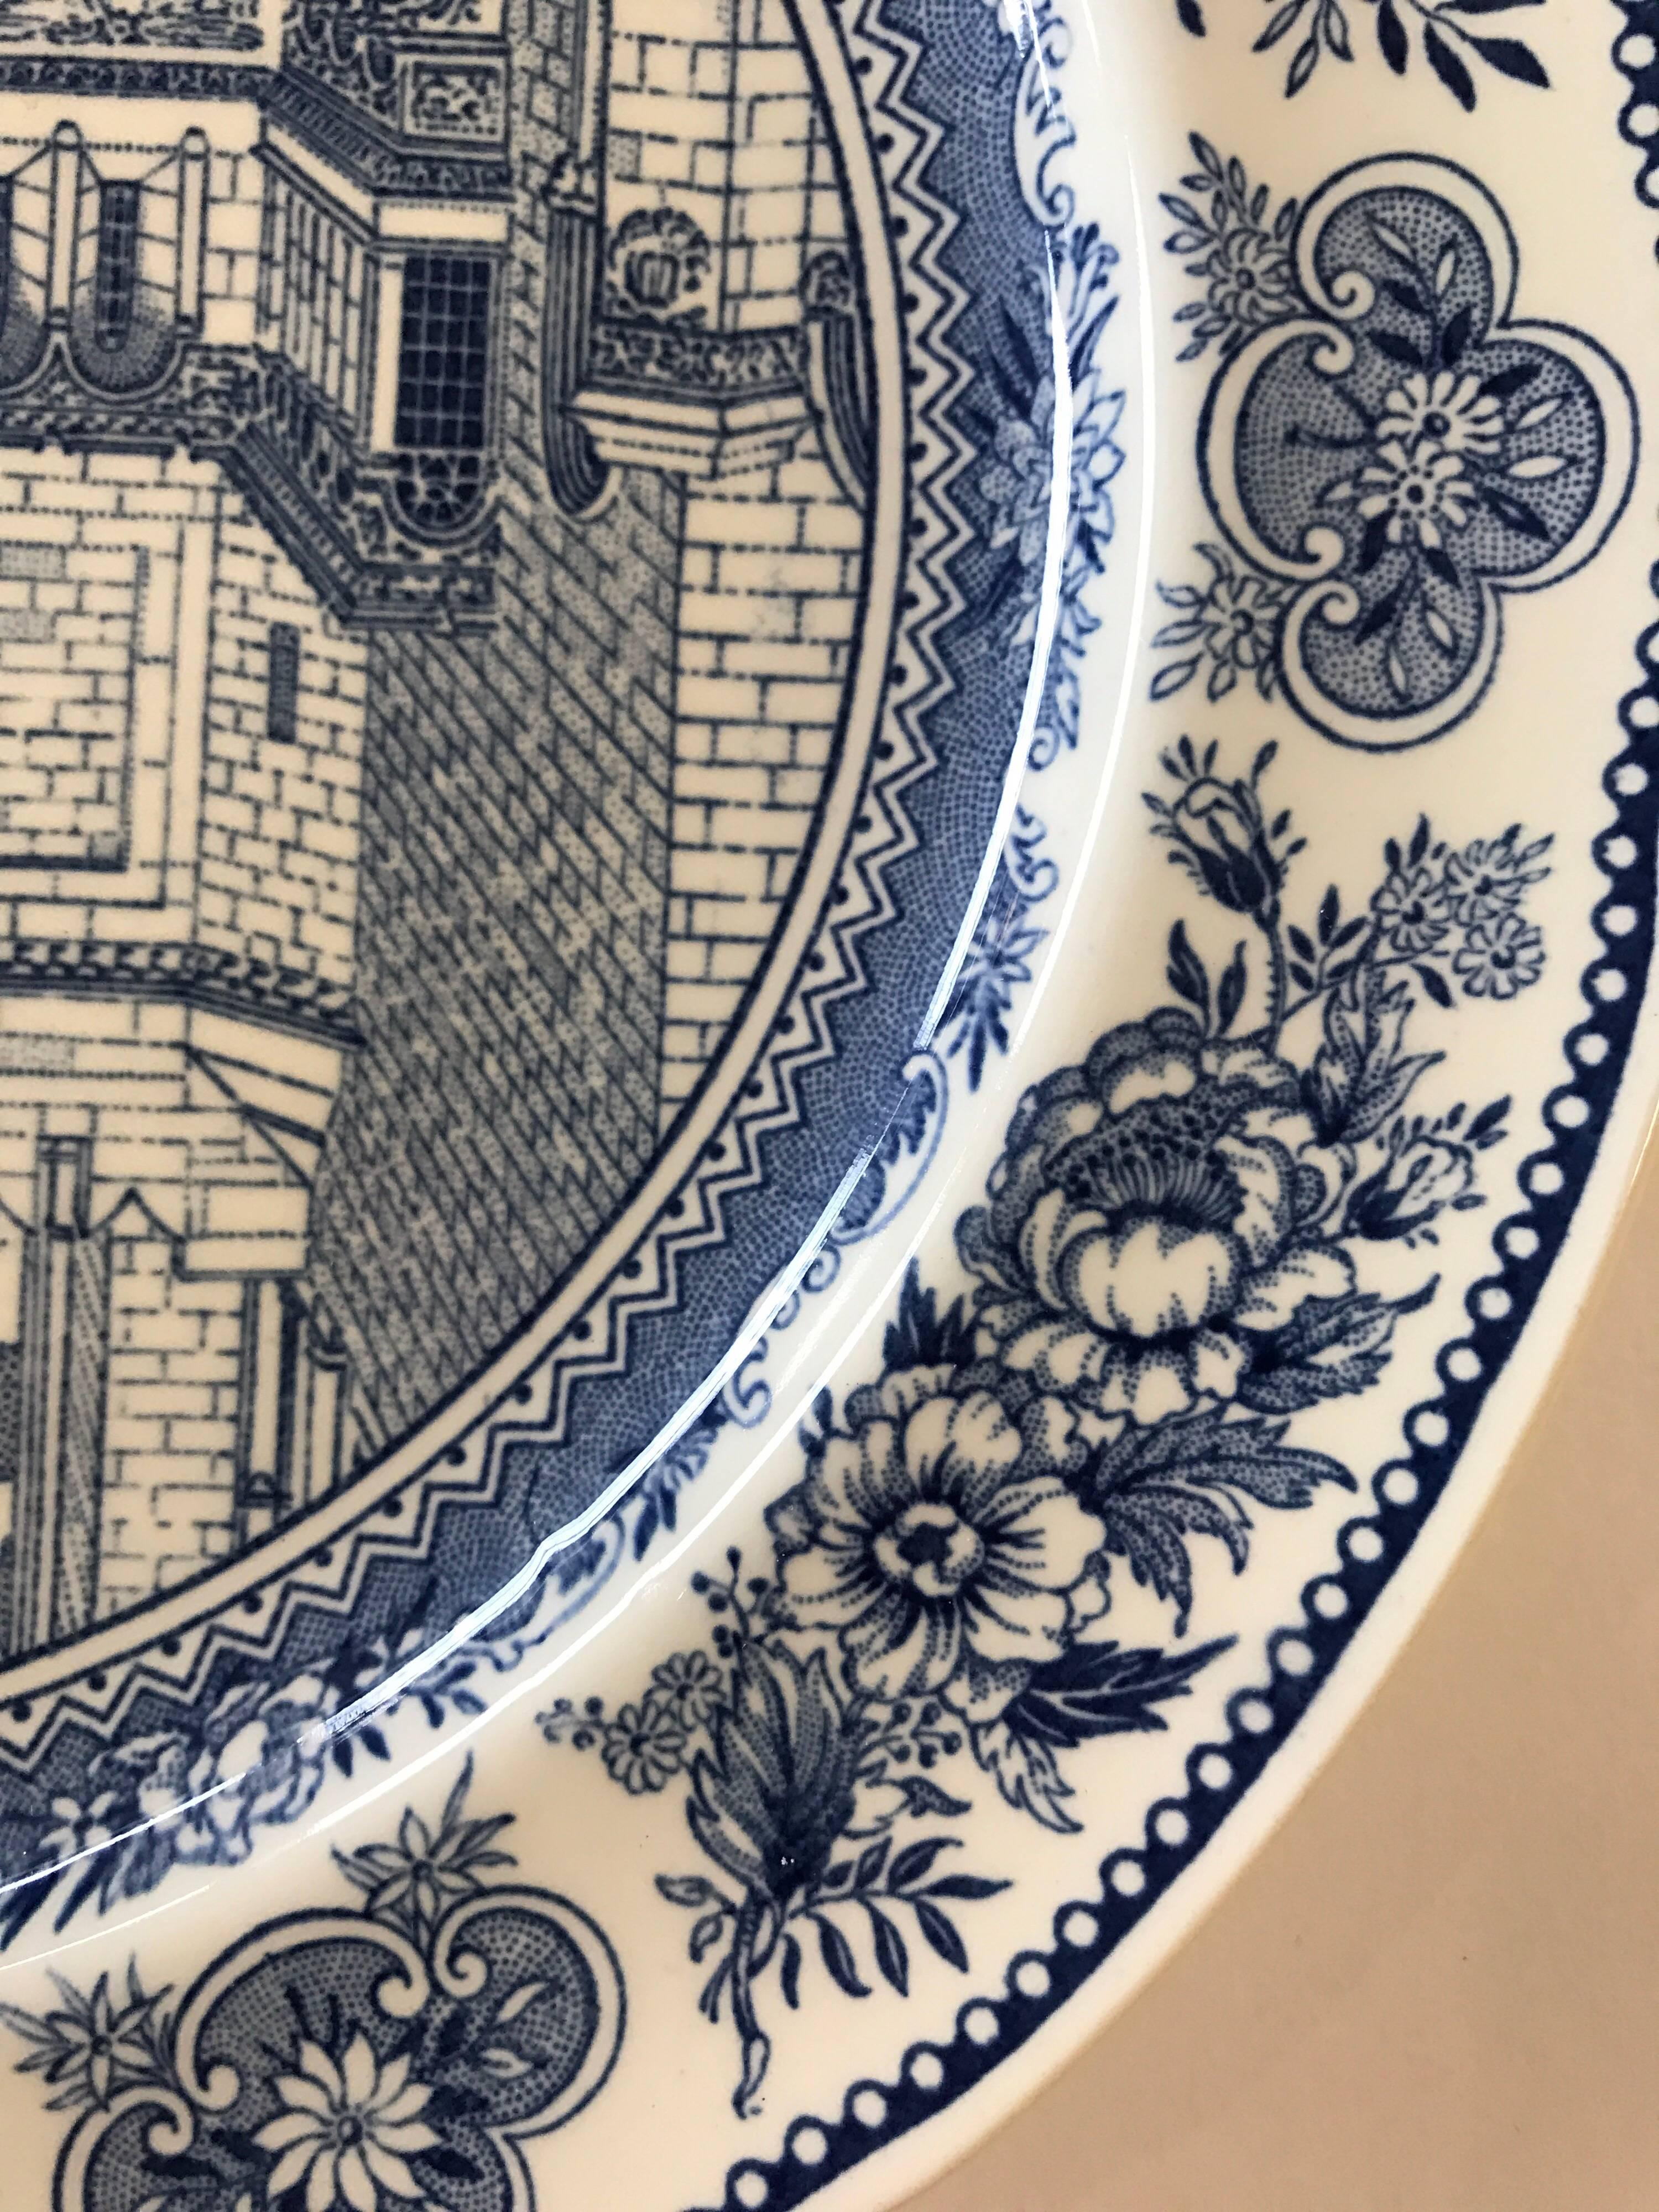 Set of Five Wedgwood Blue and White Yale University Plates 2